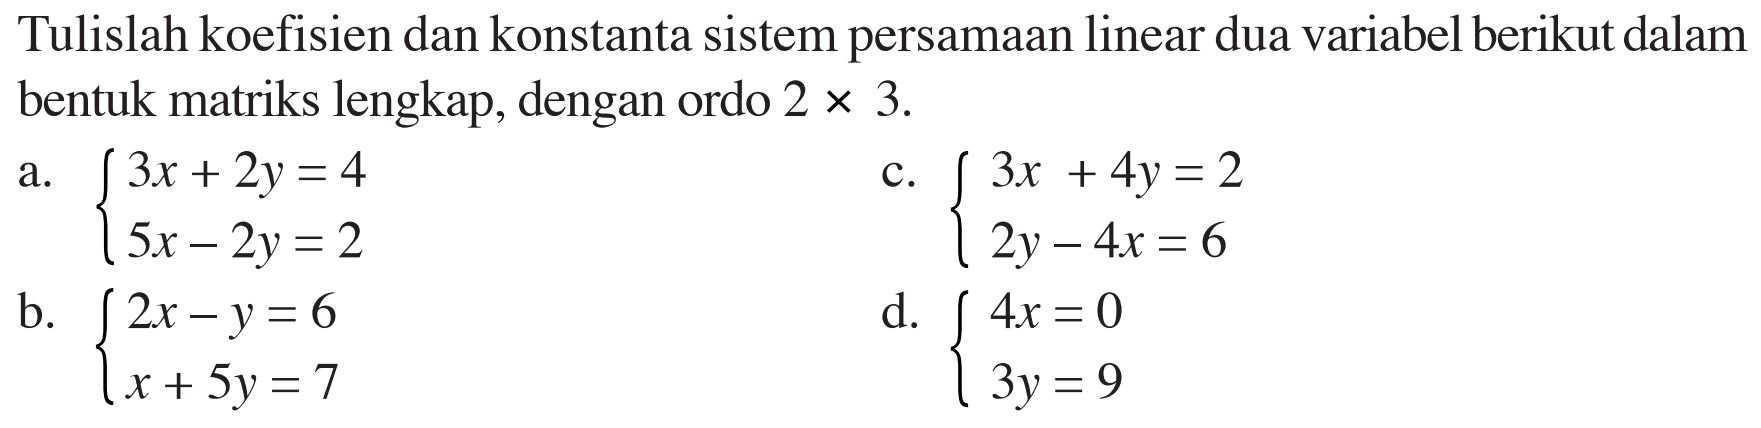 Tulislah koefisien dan konstanta sistem persamaan linear dua variabel berikut dalam bentuk matriks lengkap, dengan ordo 2x3. a. 3x+2y=4 5x-2y=2 c. 3x+4y=2 2y-4x=6 b. 2x-y=6 x+5y=7 d. 4x=0 3y=9